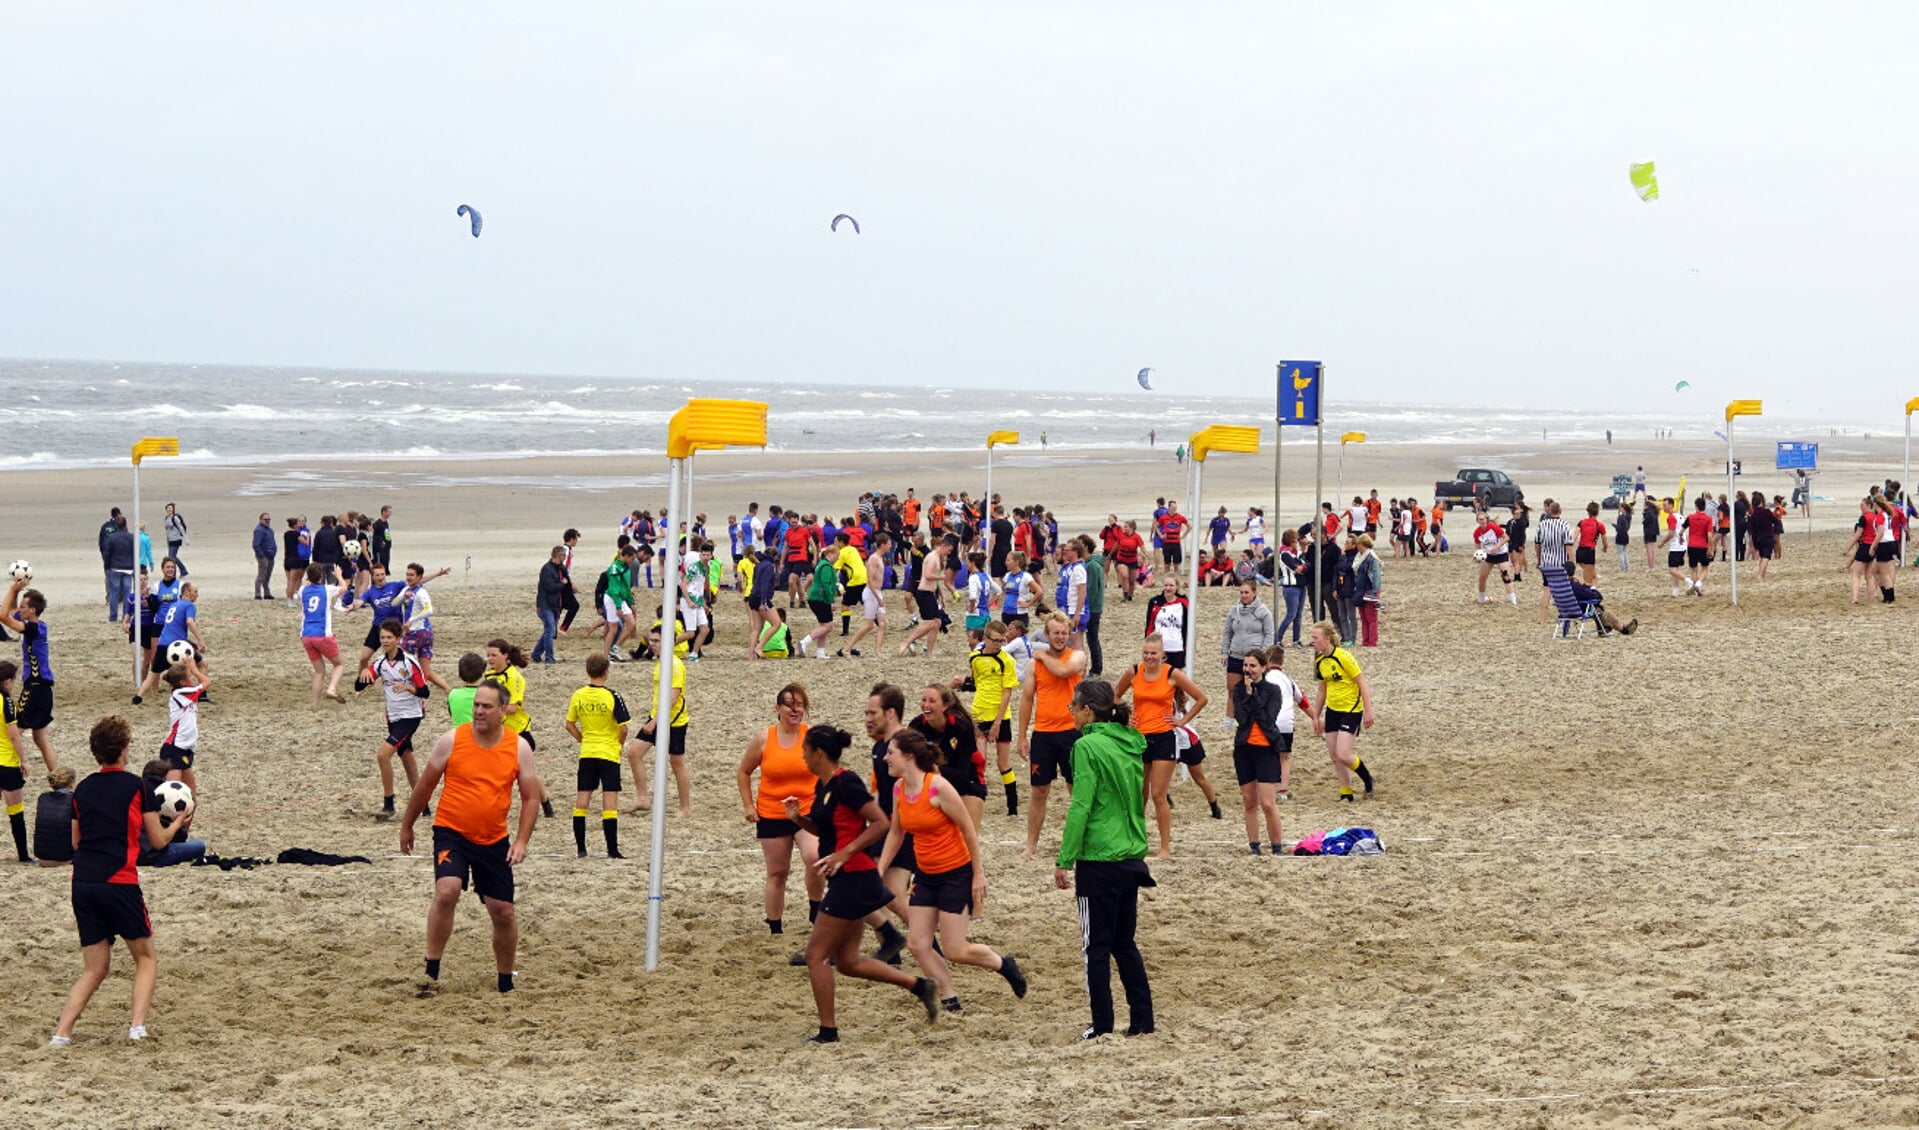 Fluks hield afgelopen zaterdag het inmiddels traditionele beachkorfbaltoernooi ter afsluiting van het korfbalseizoen. | Foto: PR